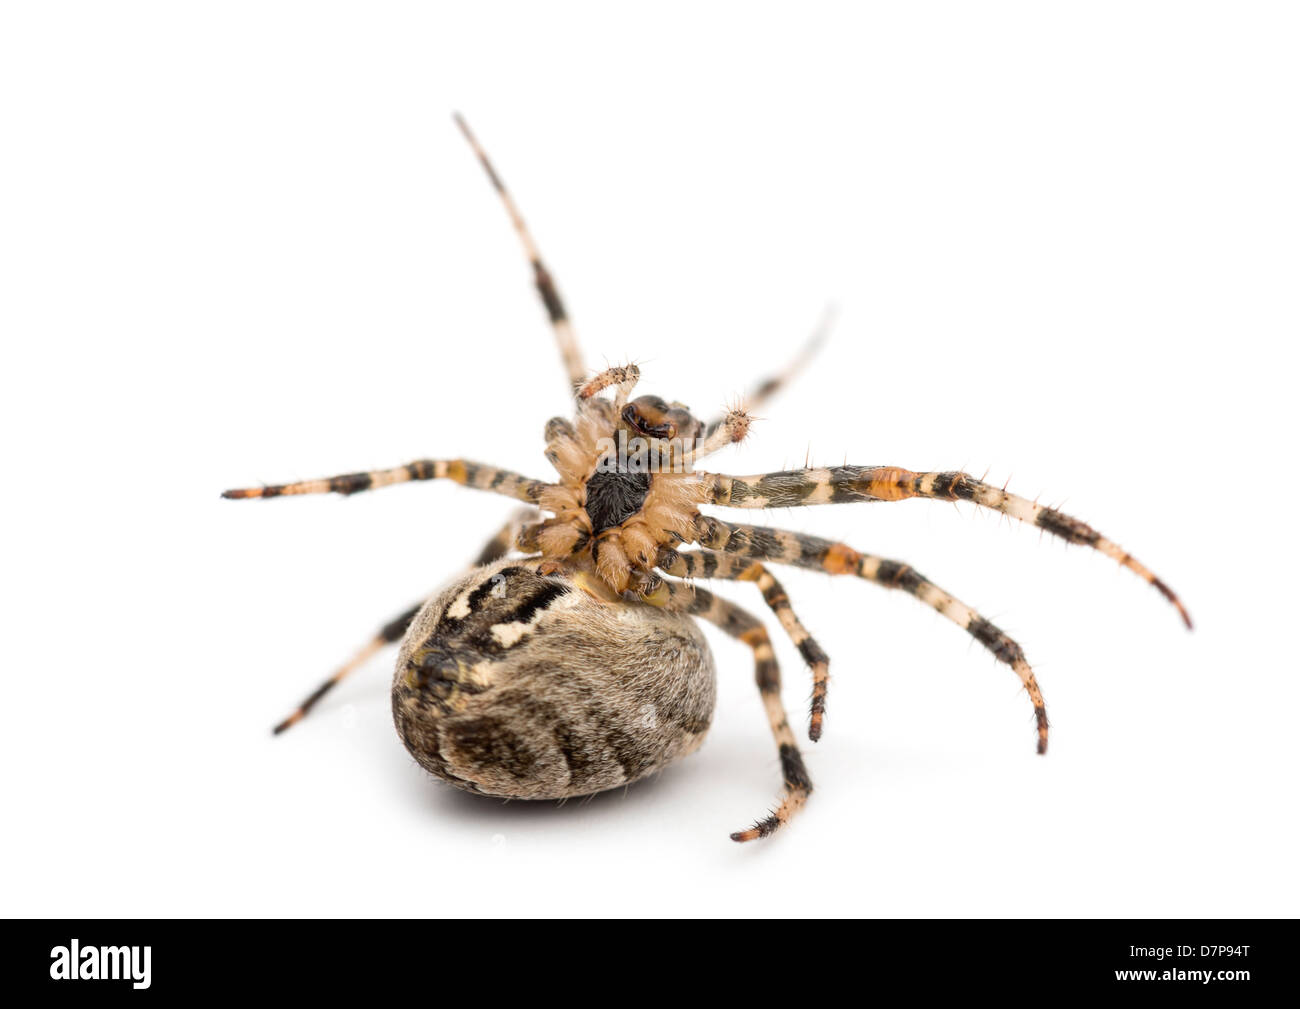 European garden spider, Araneus diadematus, on it's back against white background Stock Photo